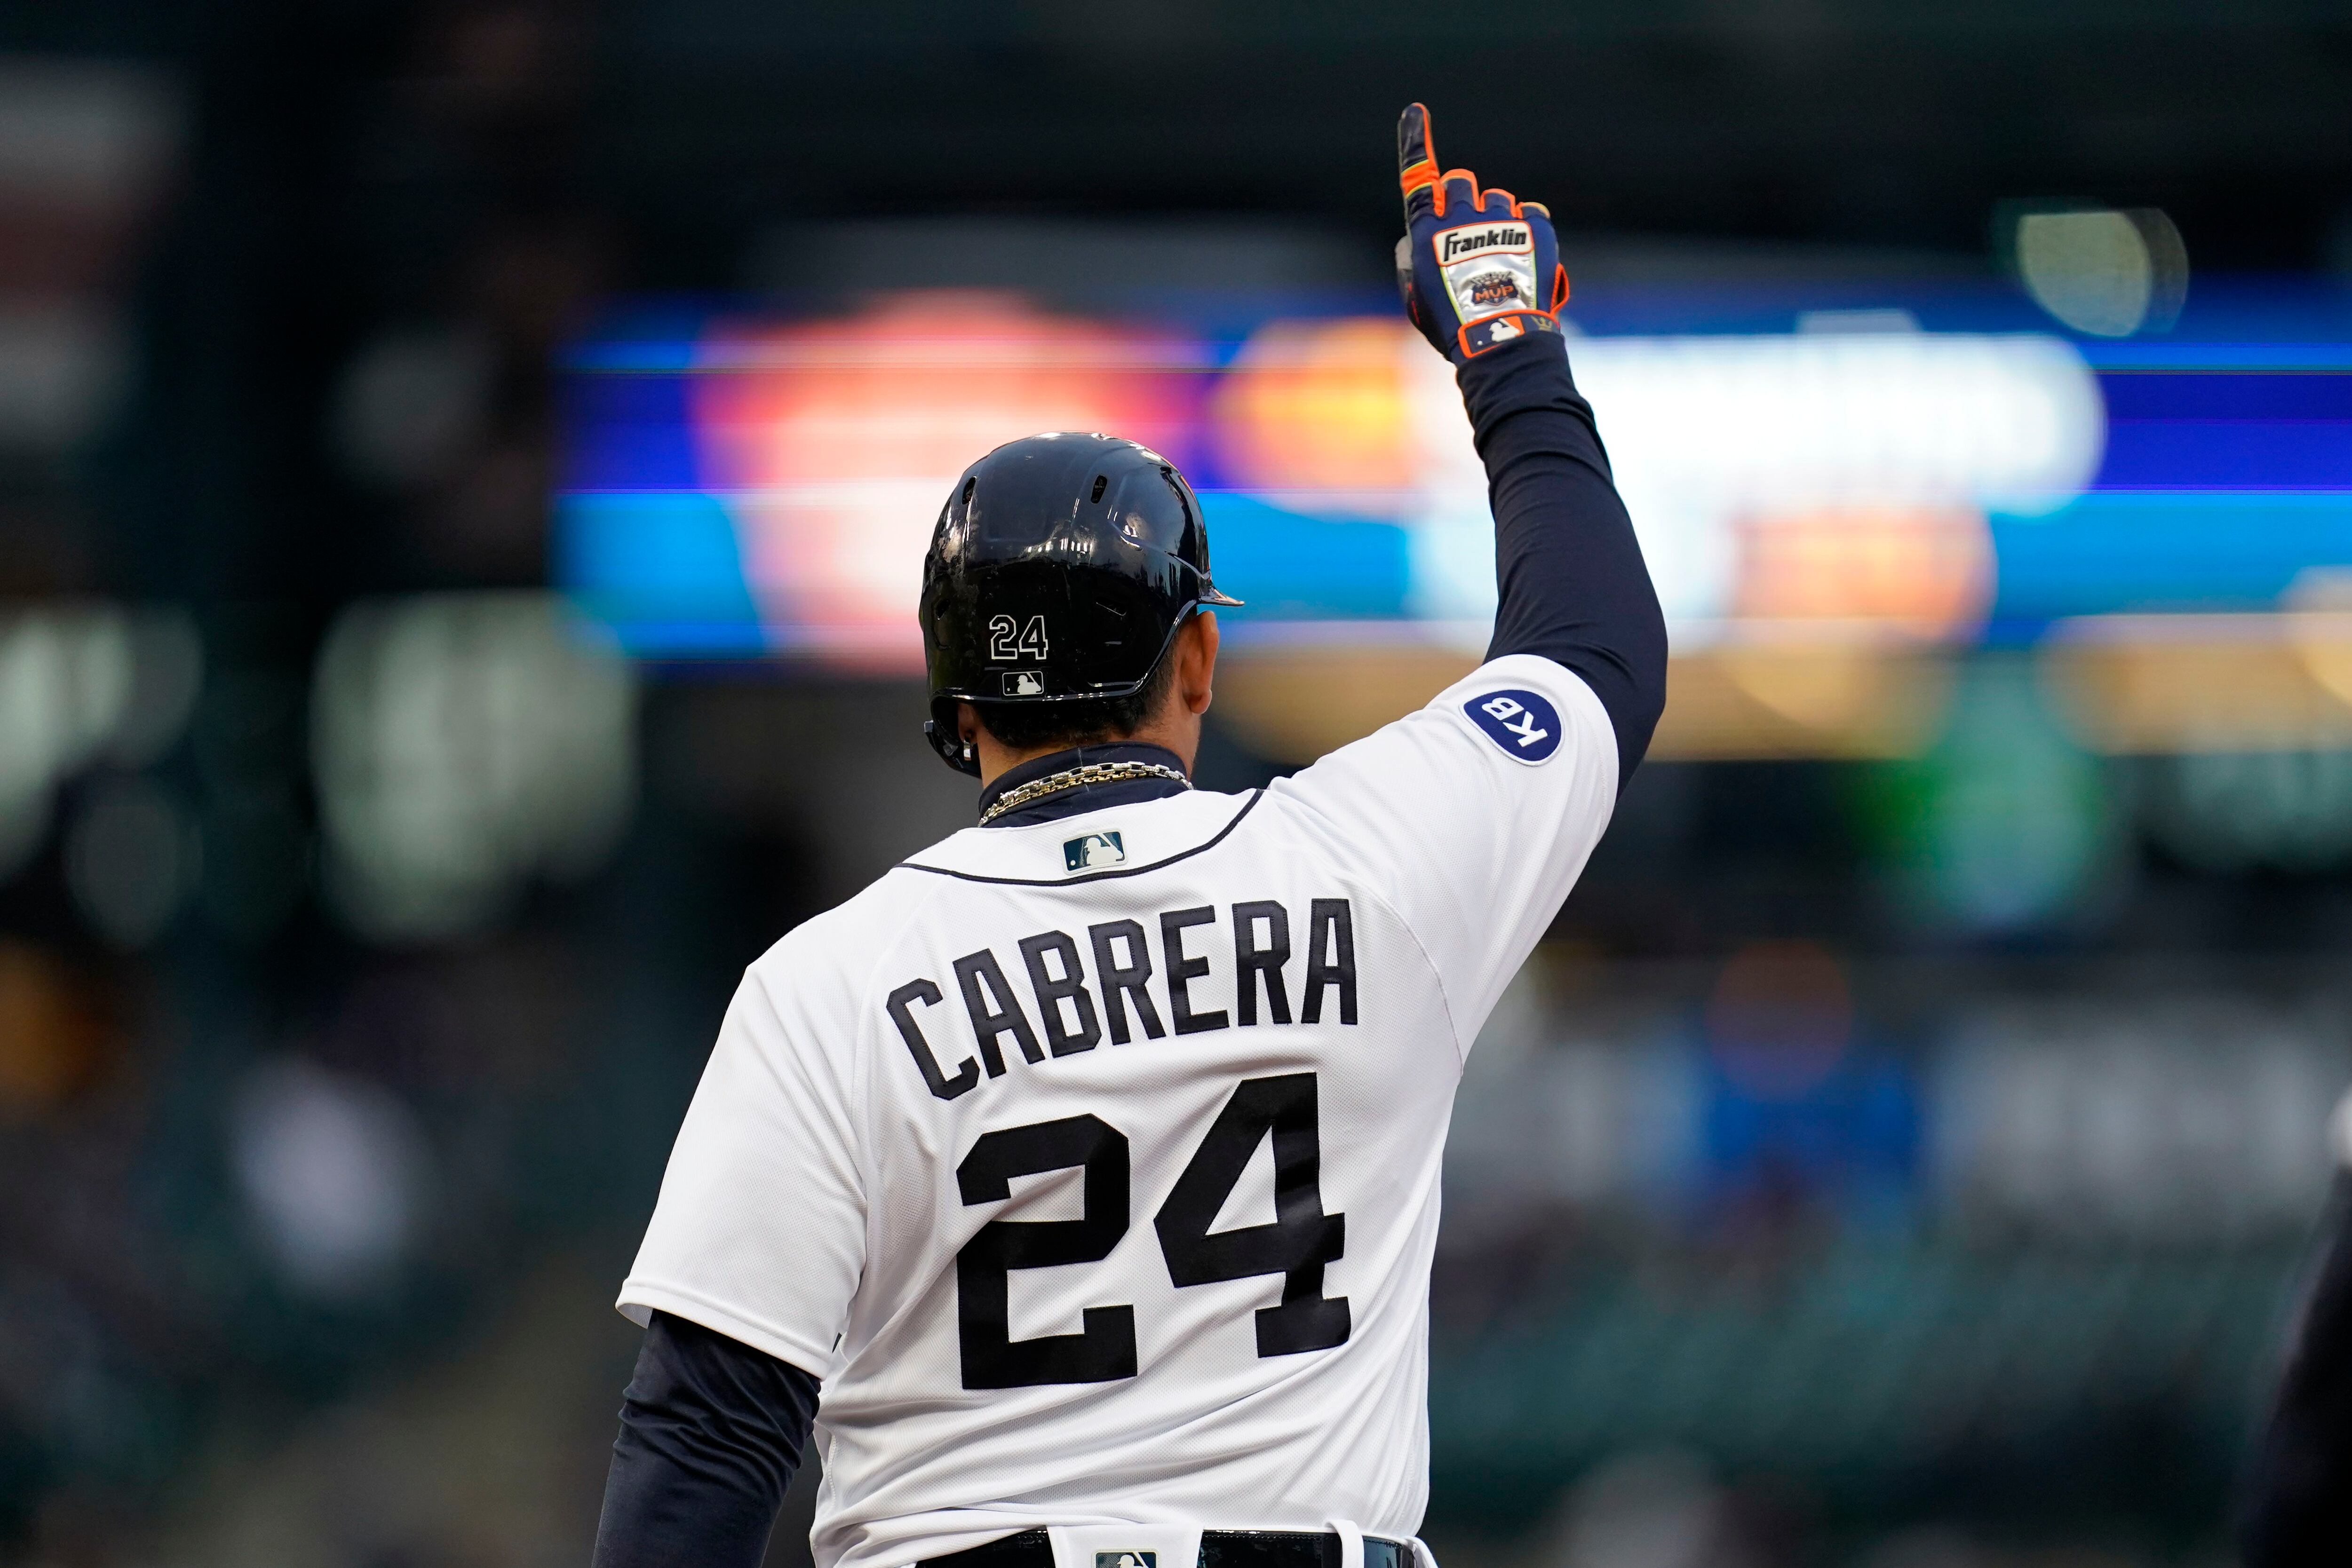 Cabrera continues his Triple Crown ways